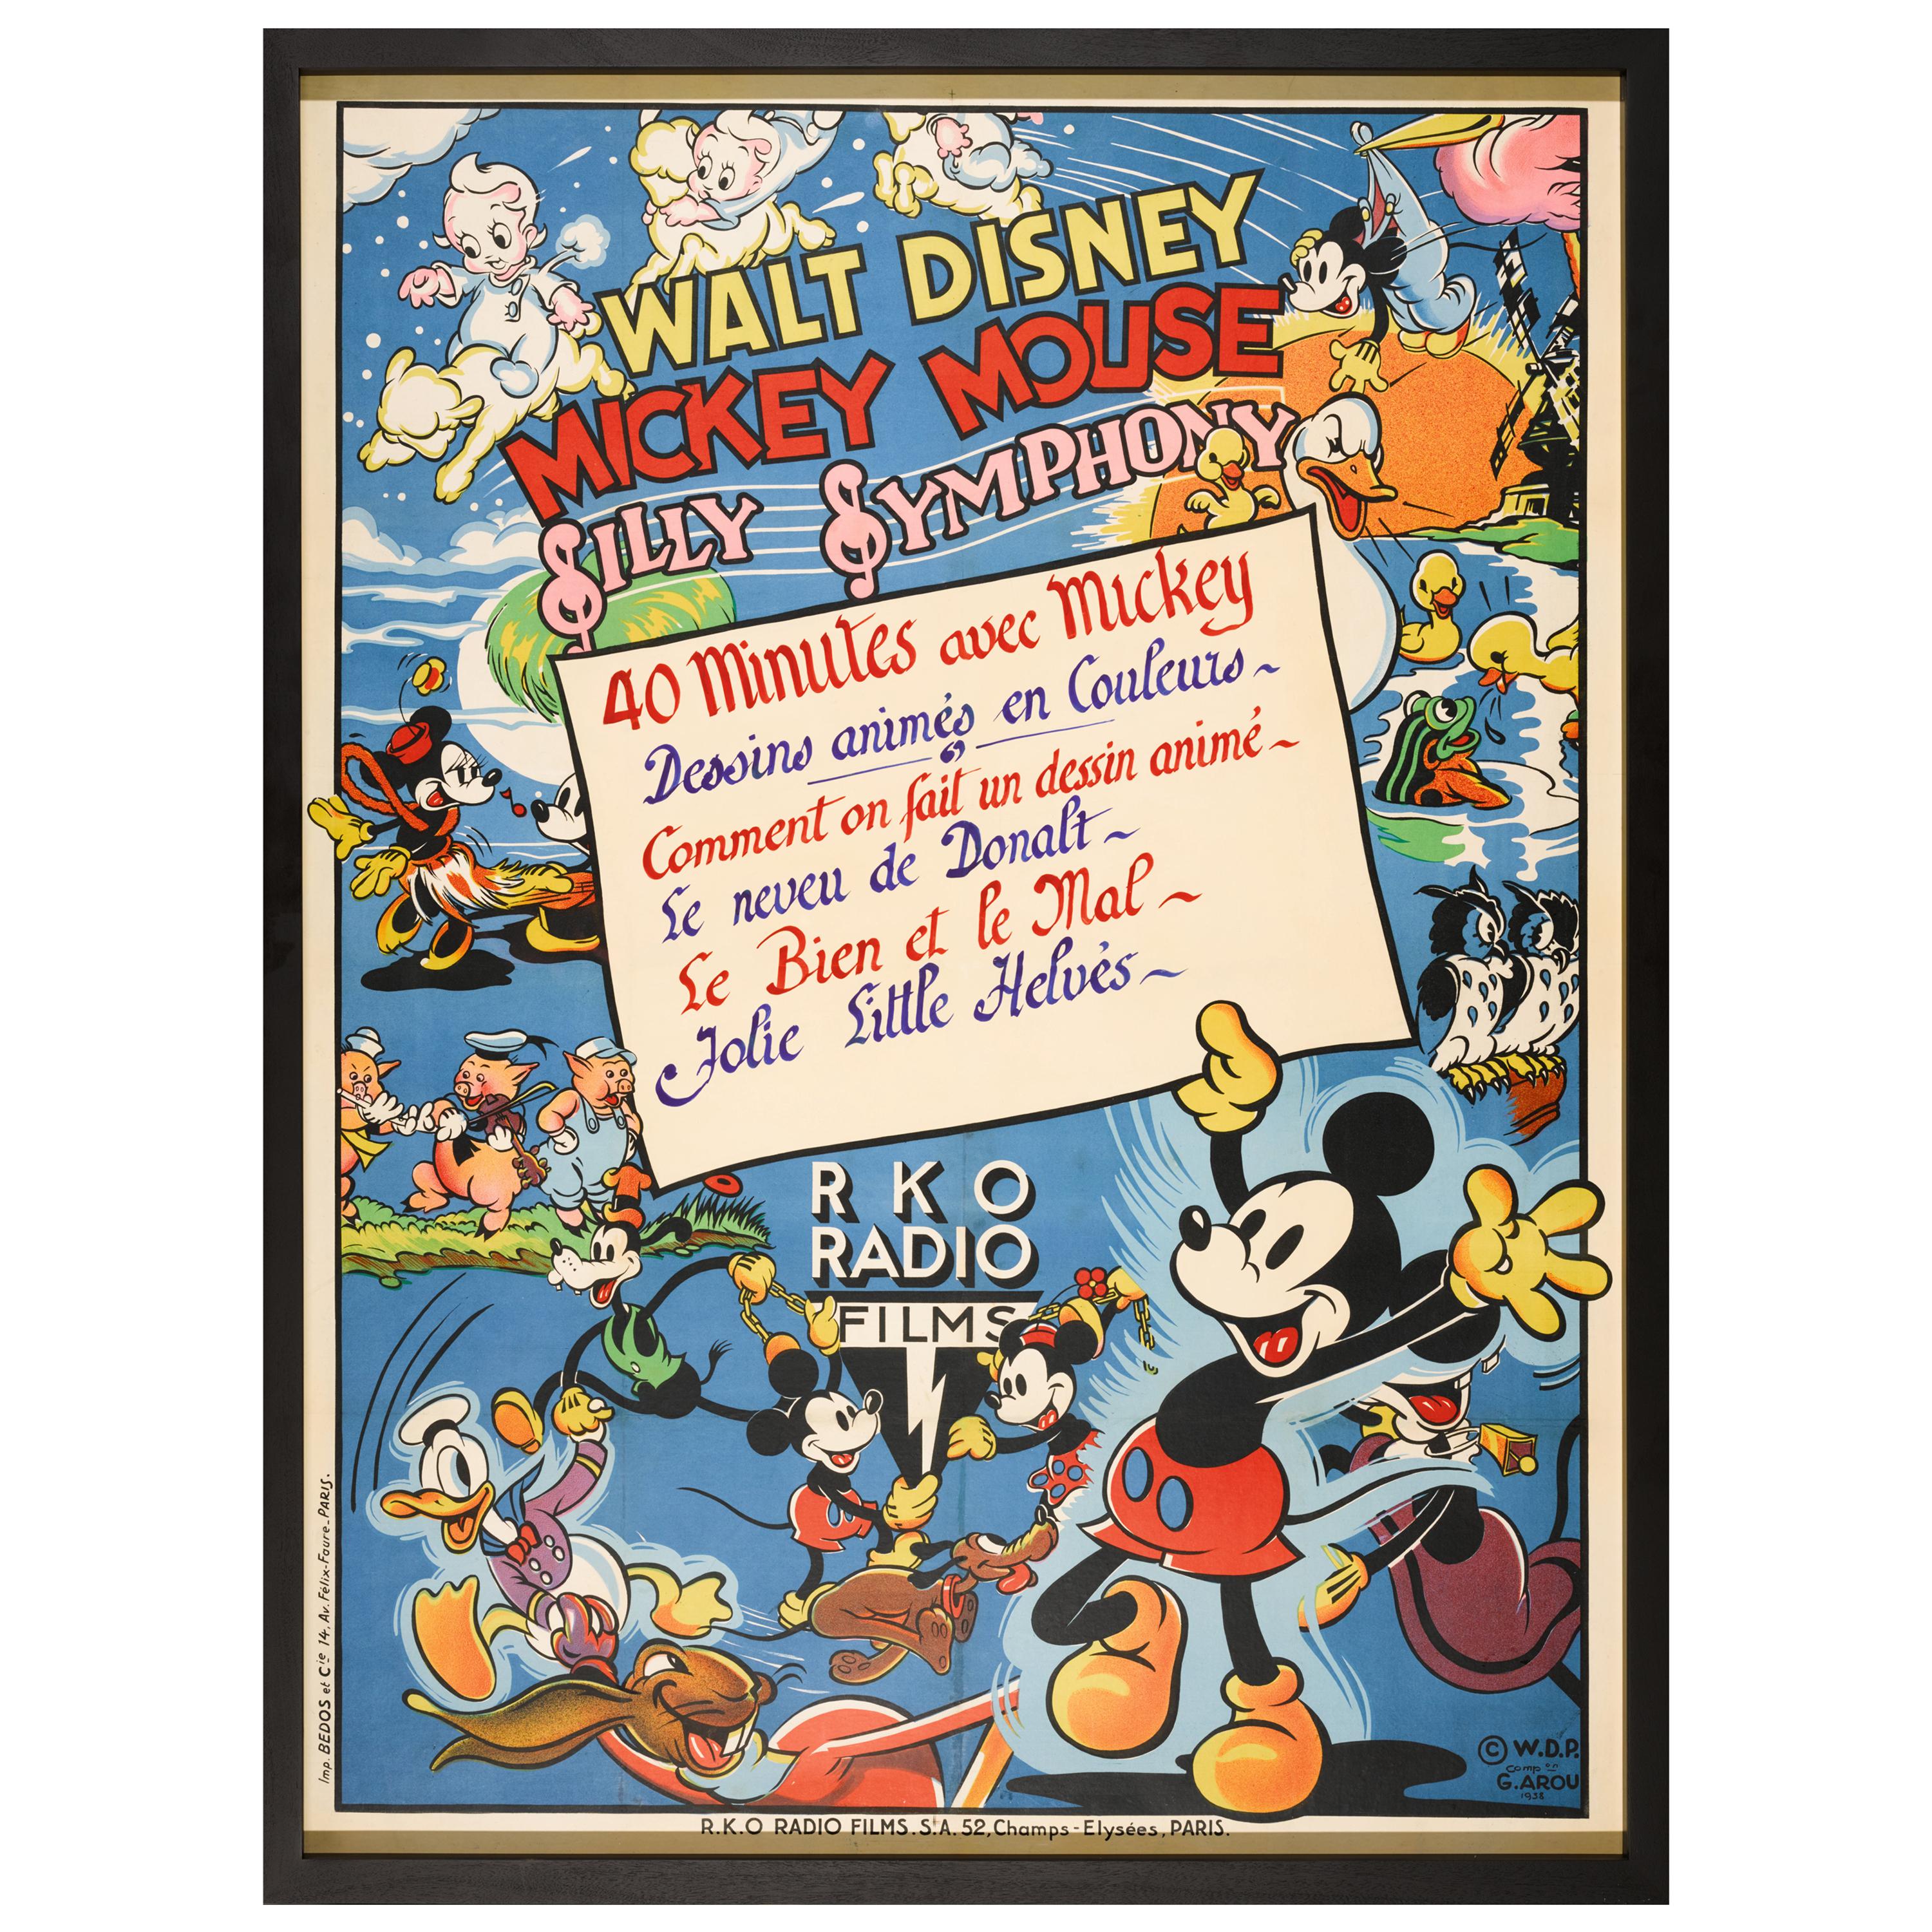 Mickey Mouse, Silly Symphony